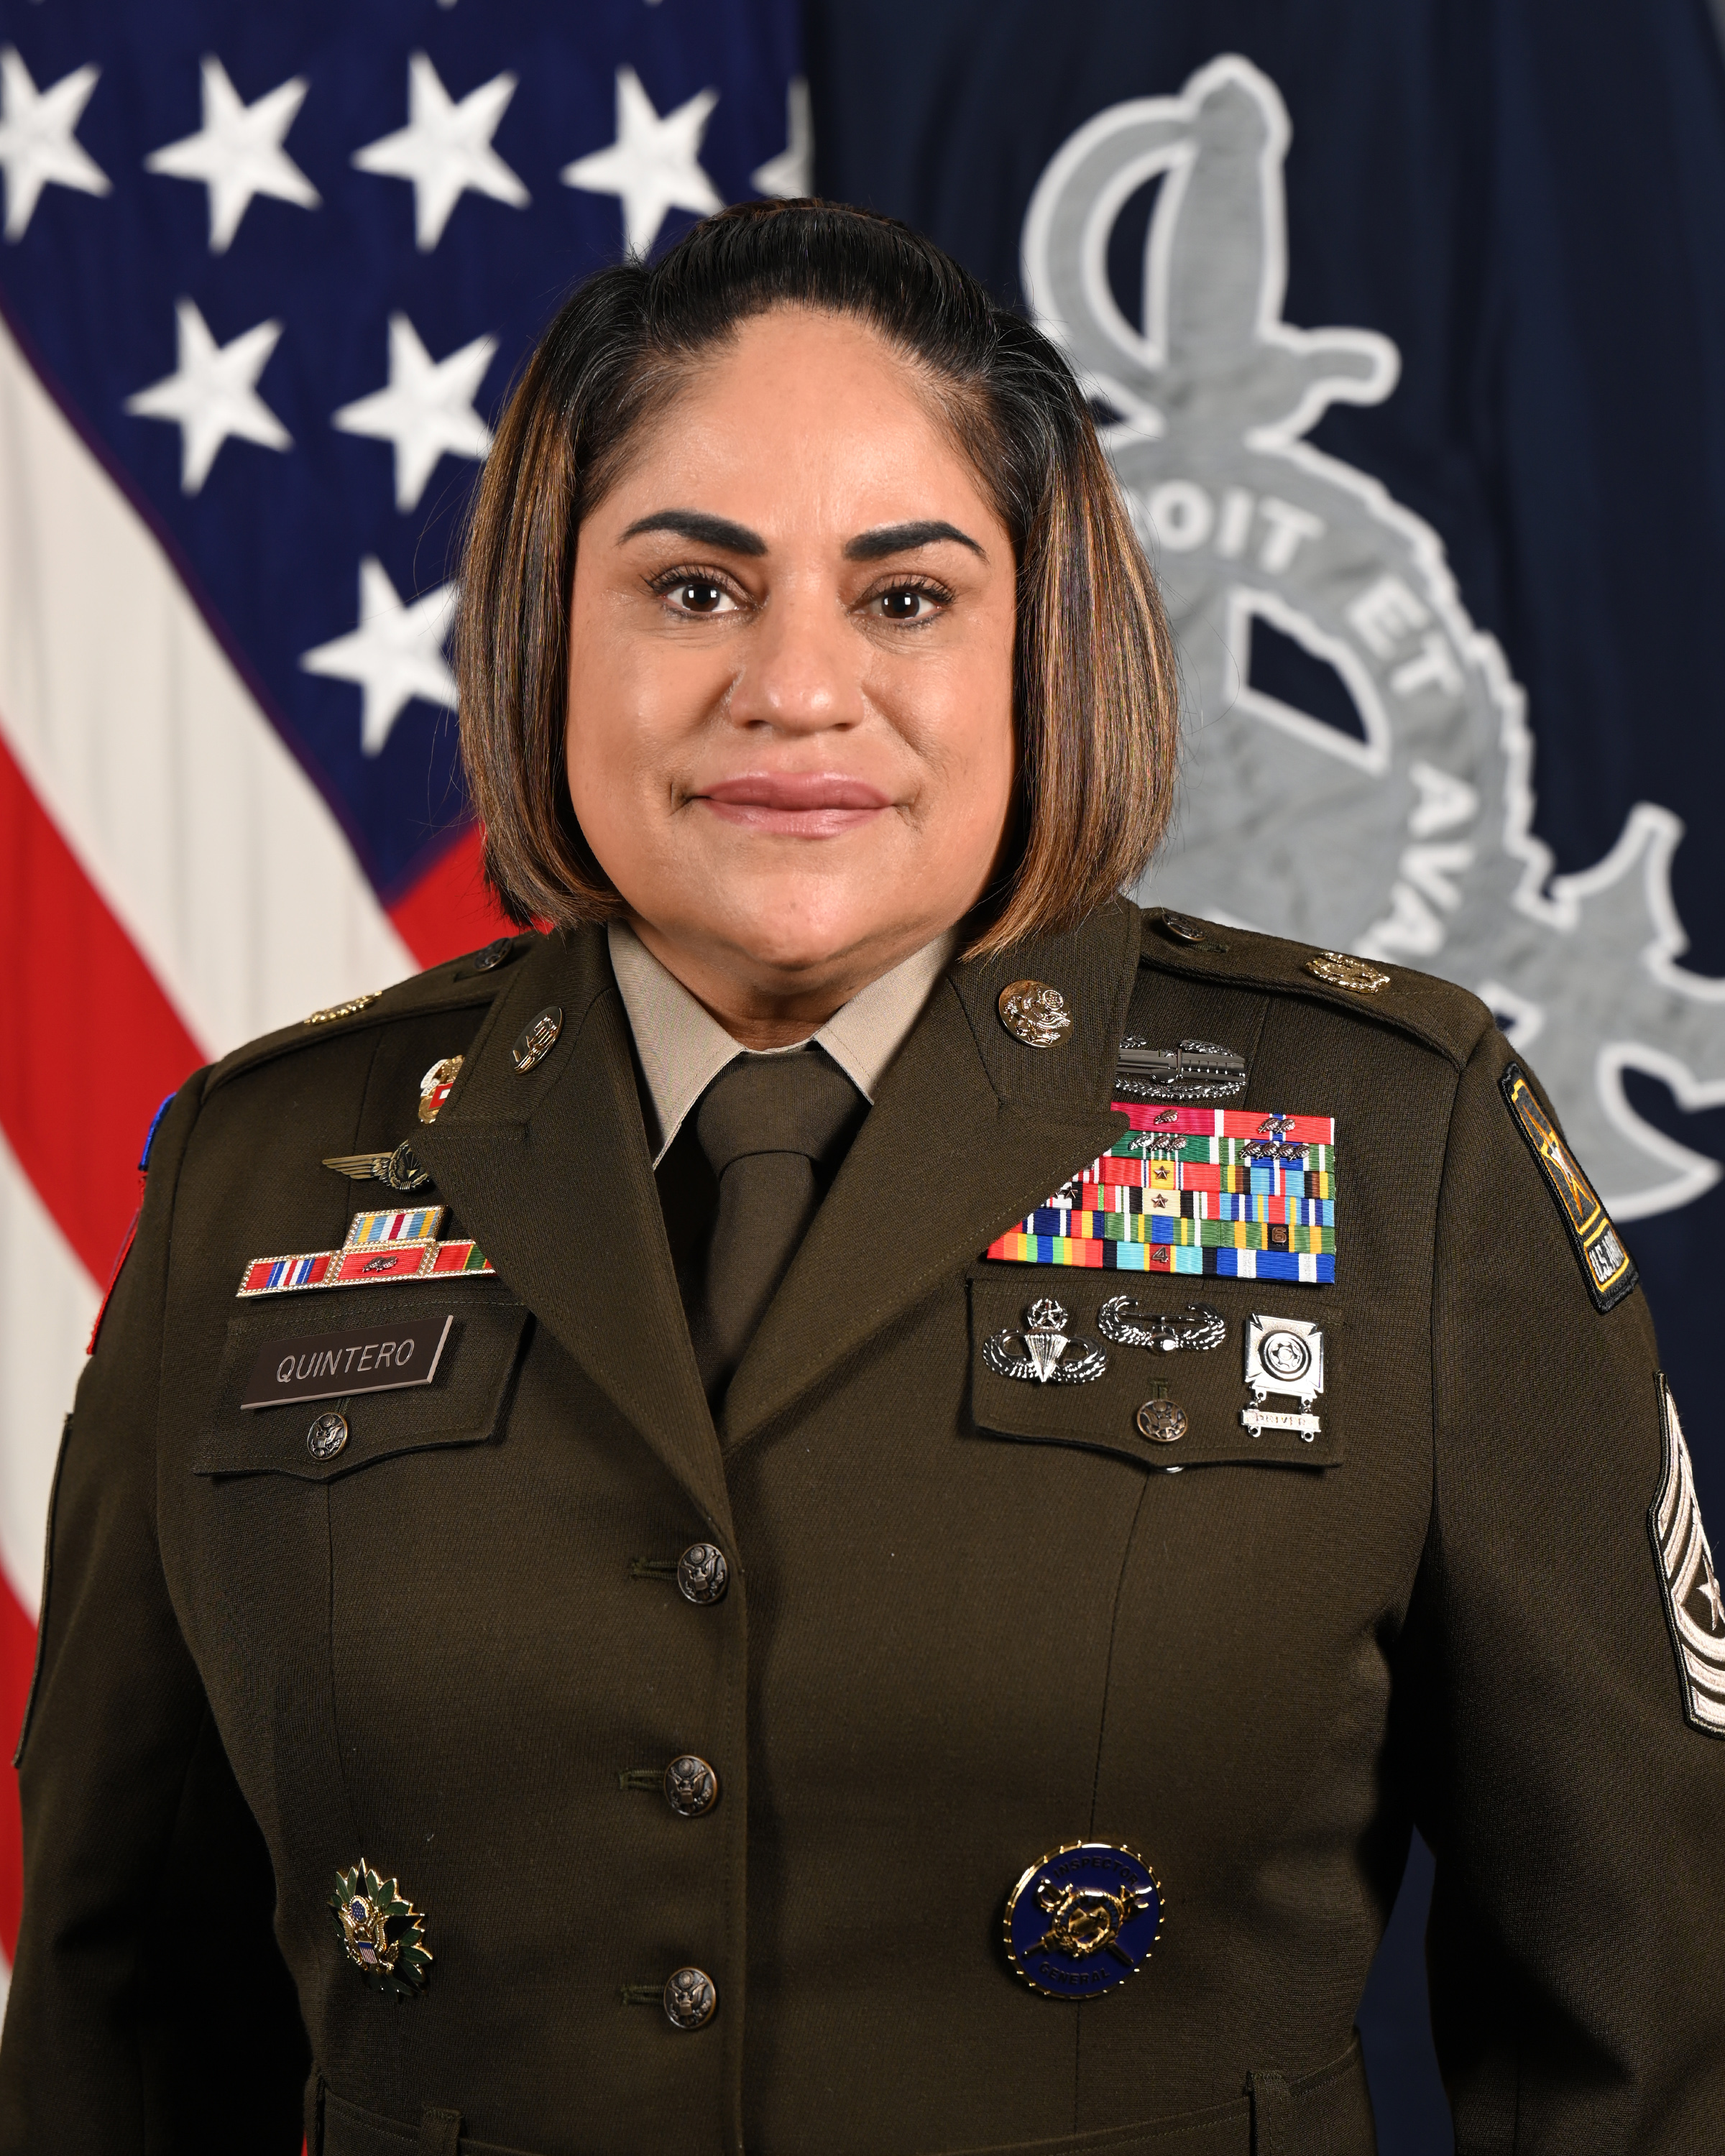 SGM Delia Quintero, the 9th Inspector General Sergeant Major